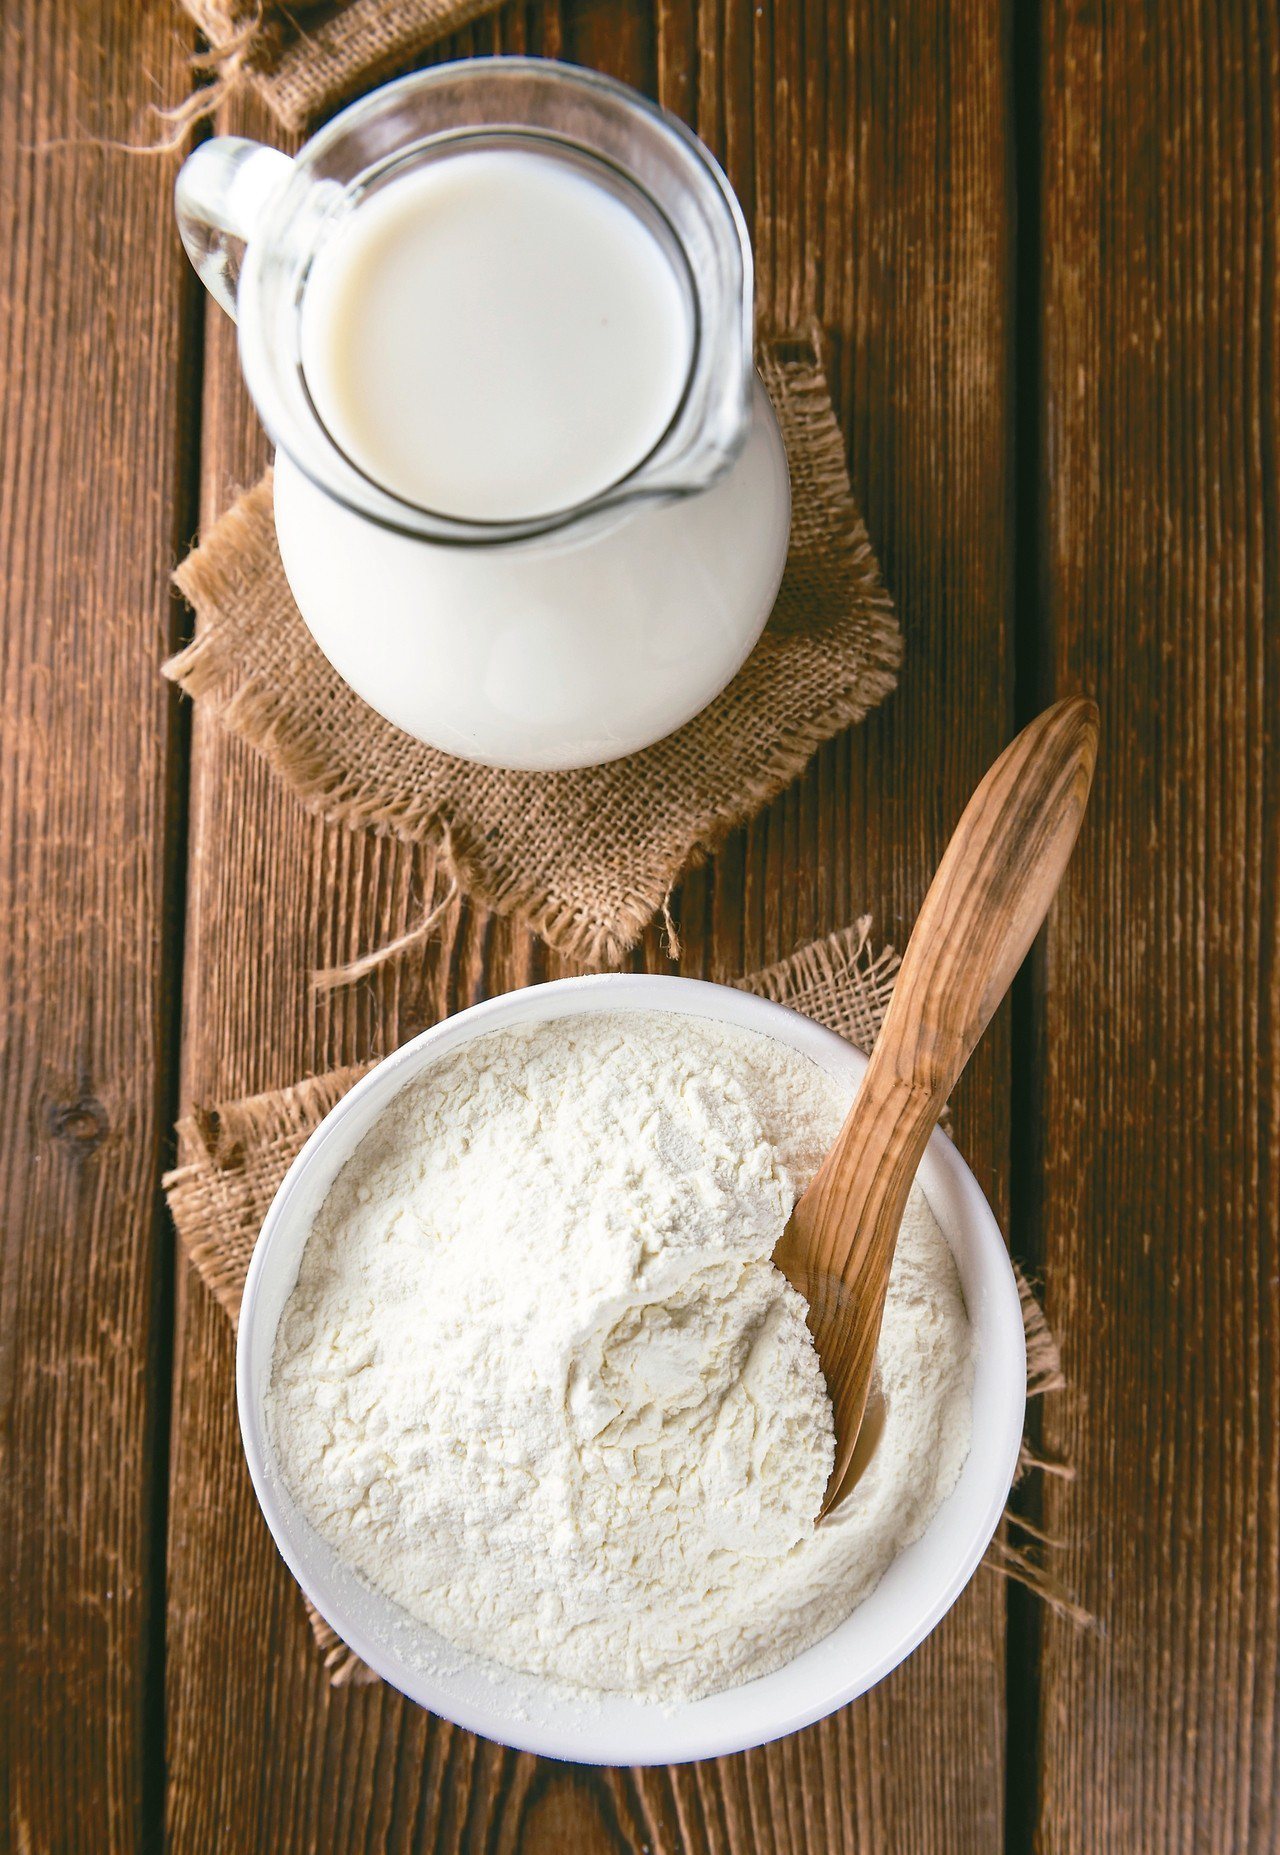 羊奶和牛奶一樣具豐富鈣質，更被歐美國家視為乳類珍品，但羊奶產品該怎麼選最好？